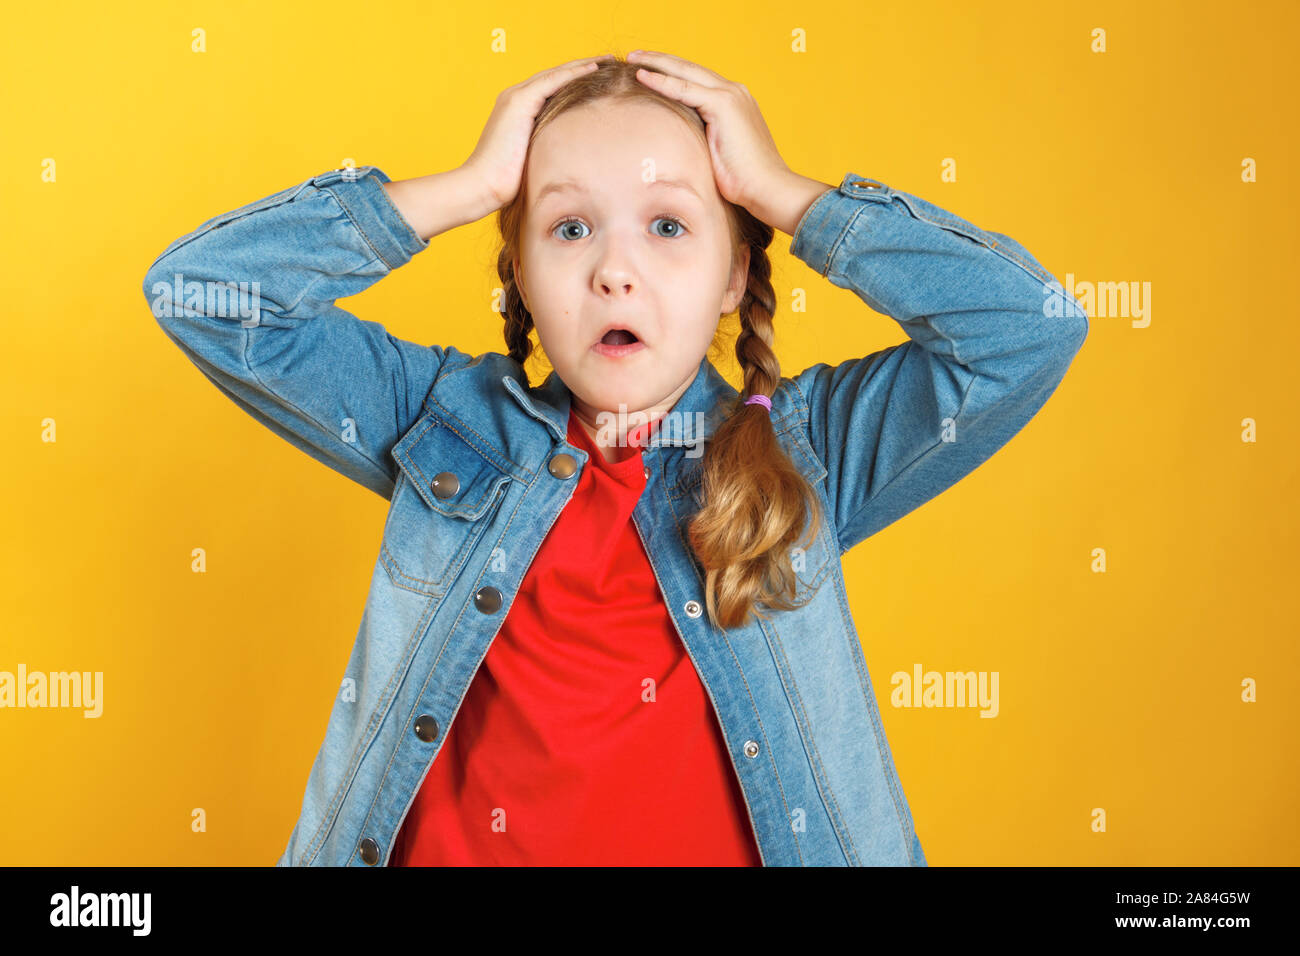 Lustiges kleines Mädchen hält die Hände hinter den Kopf auf einem gelben Hintergrund. Das Kind ist erstaunt, überrascht, emotional. Stockfoto